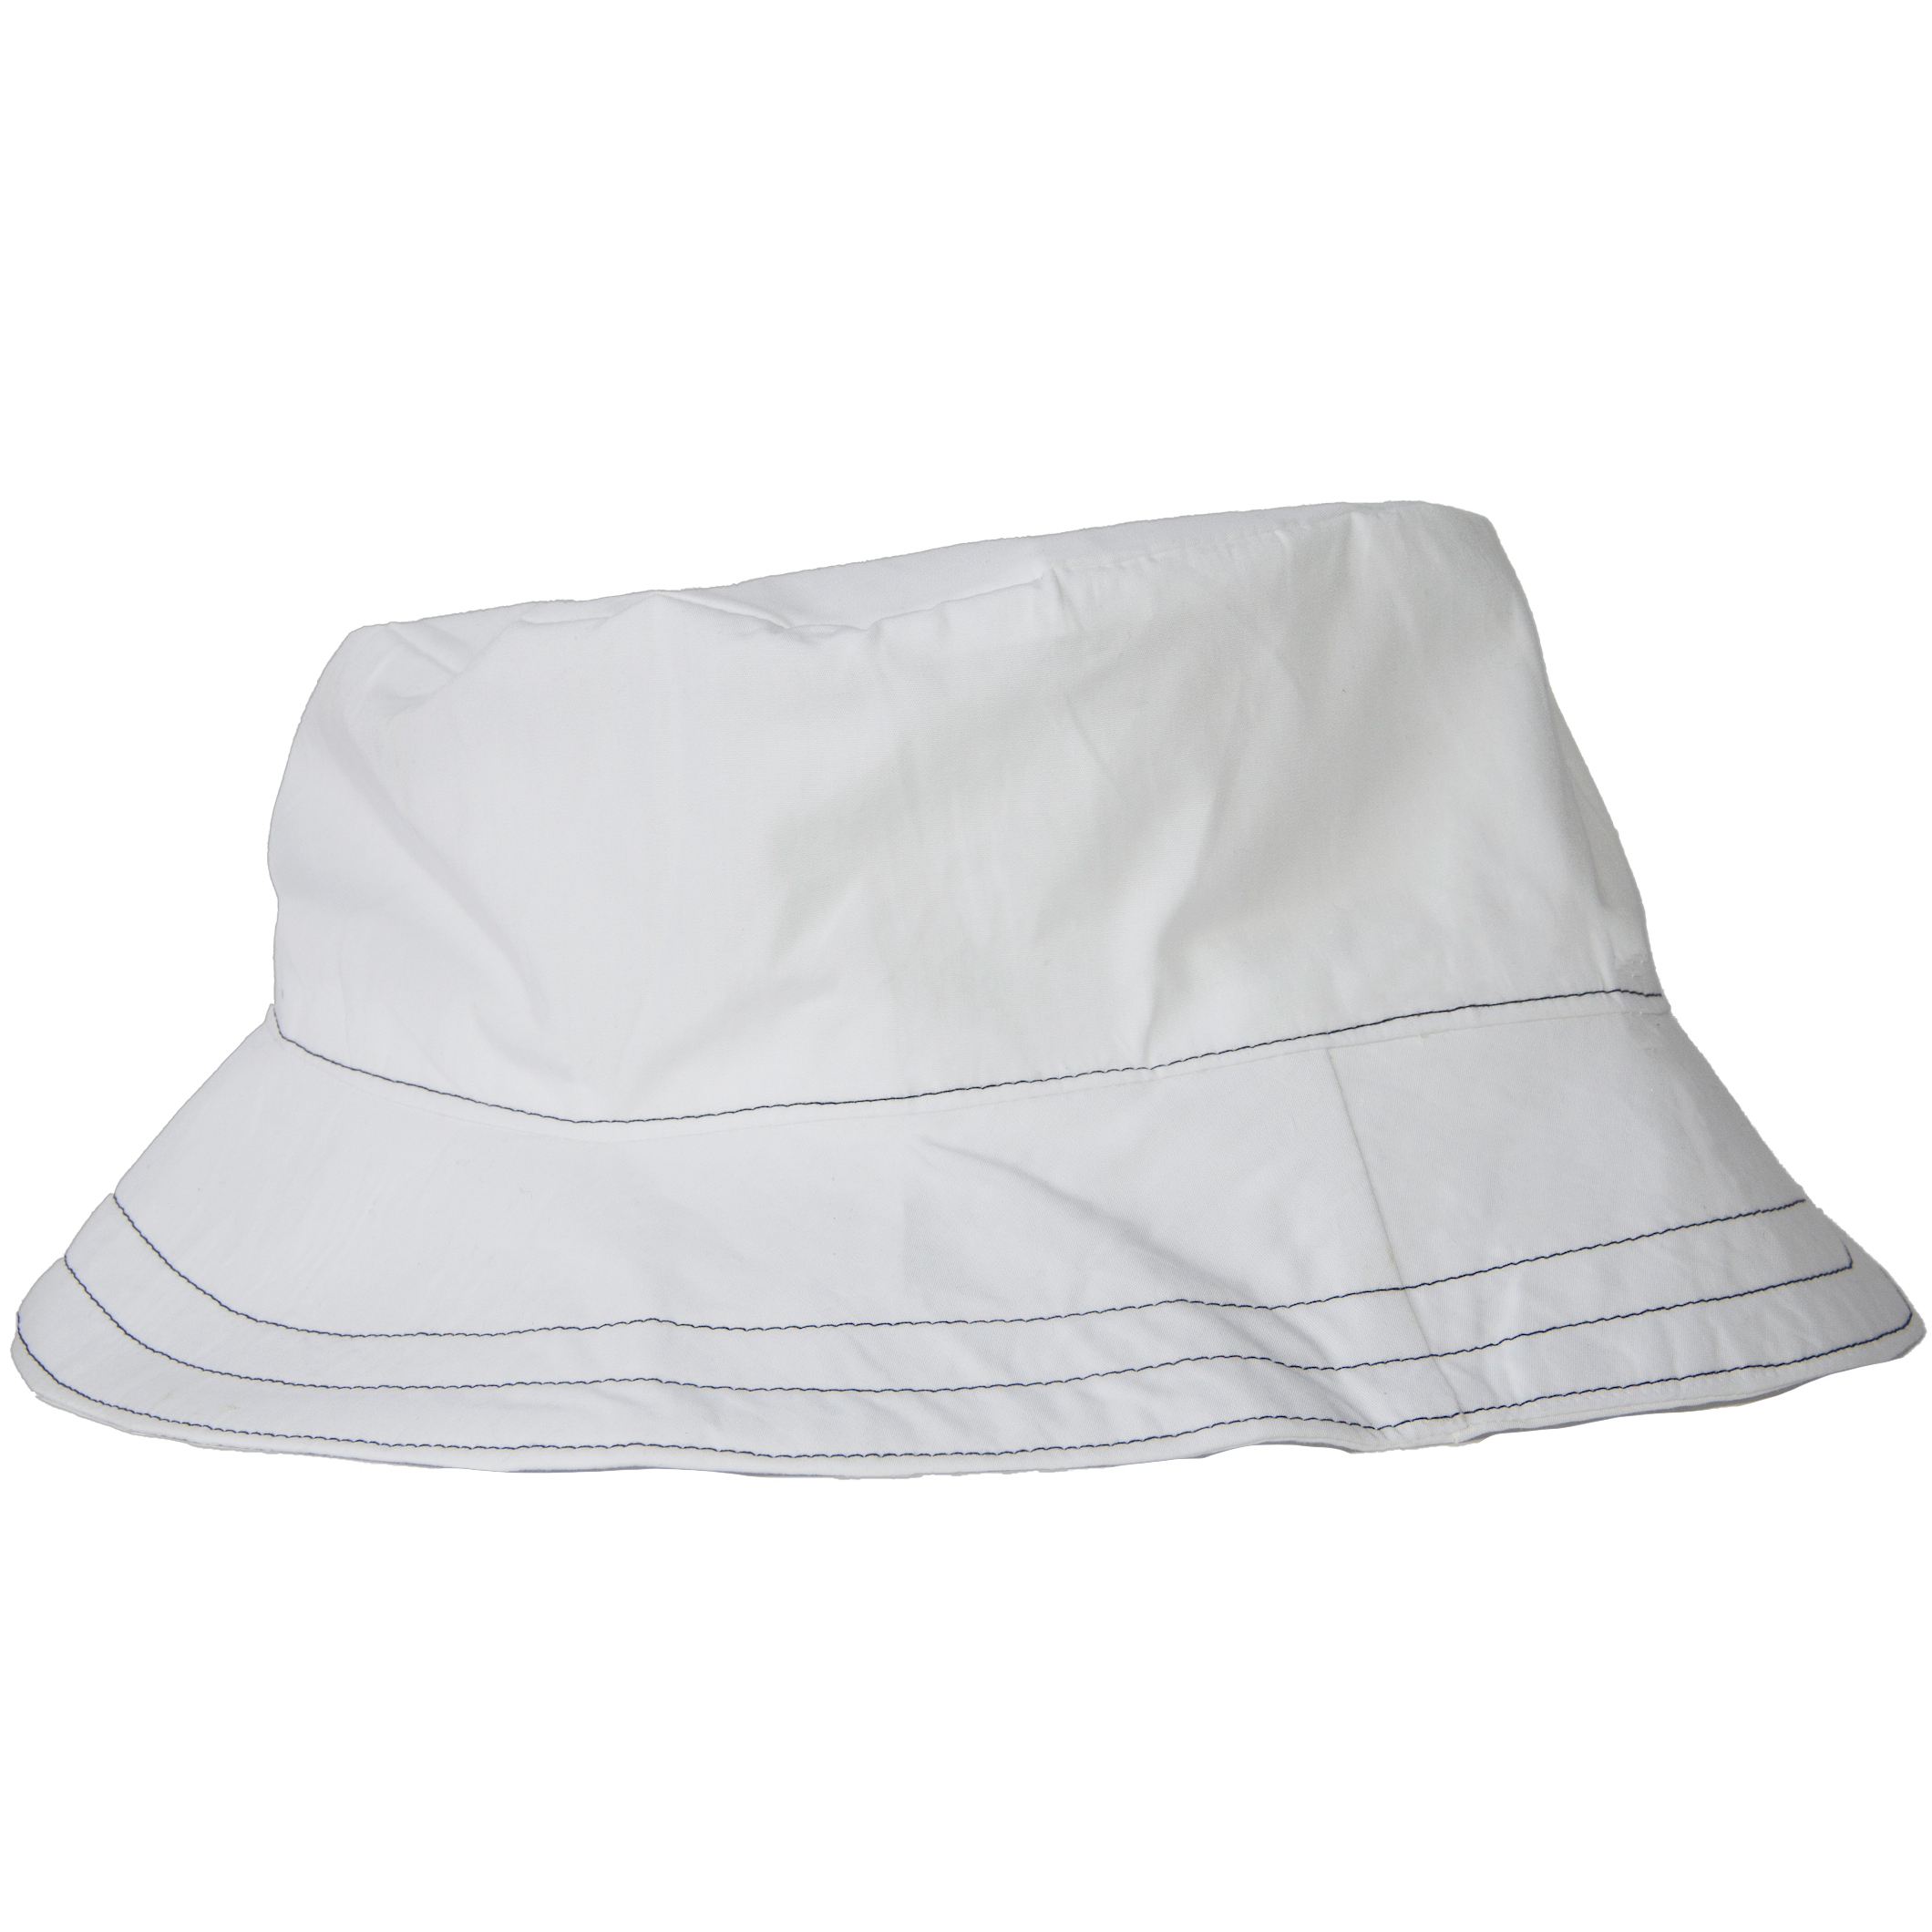 Bucket hat - White